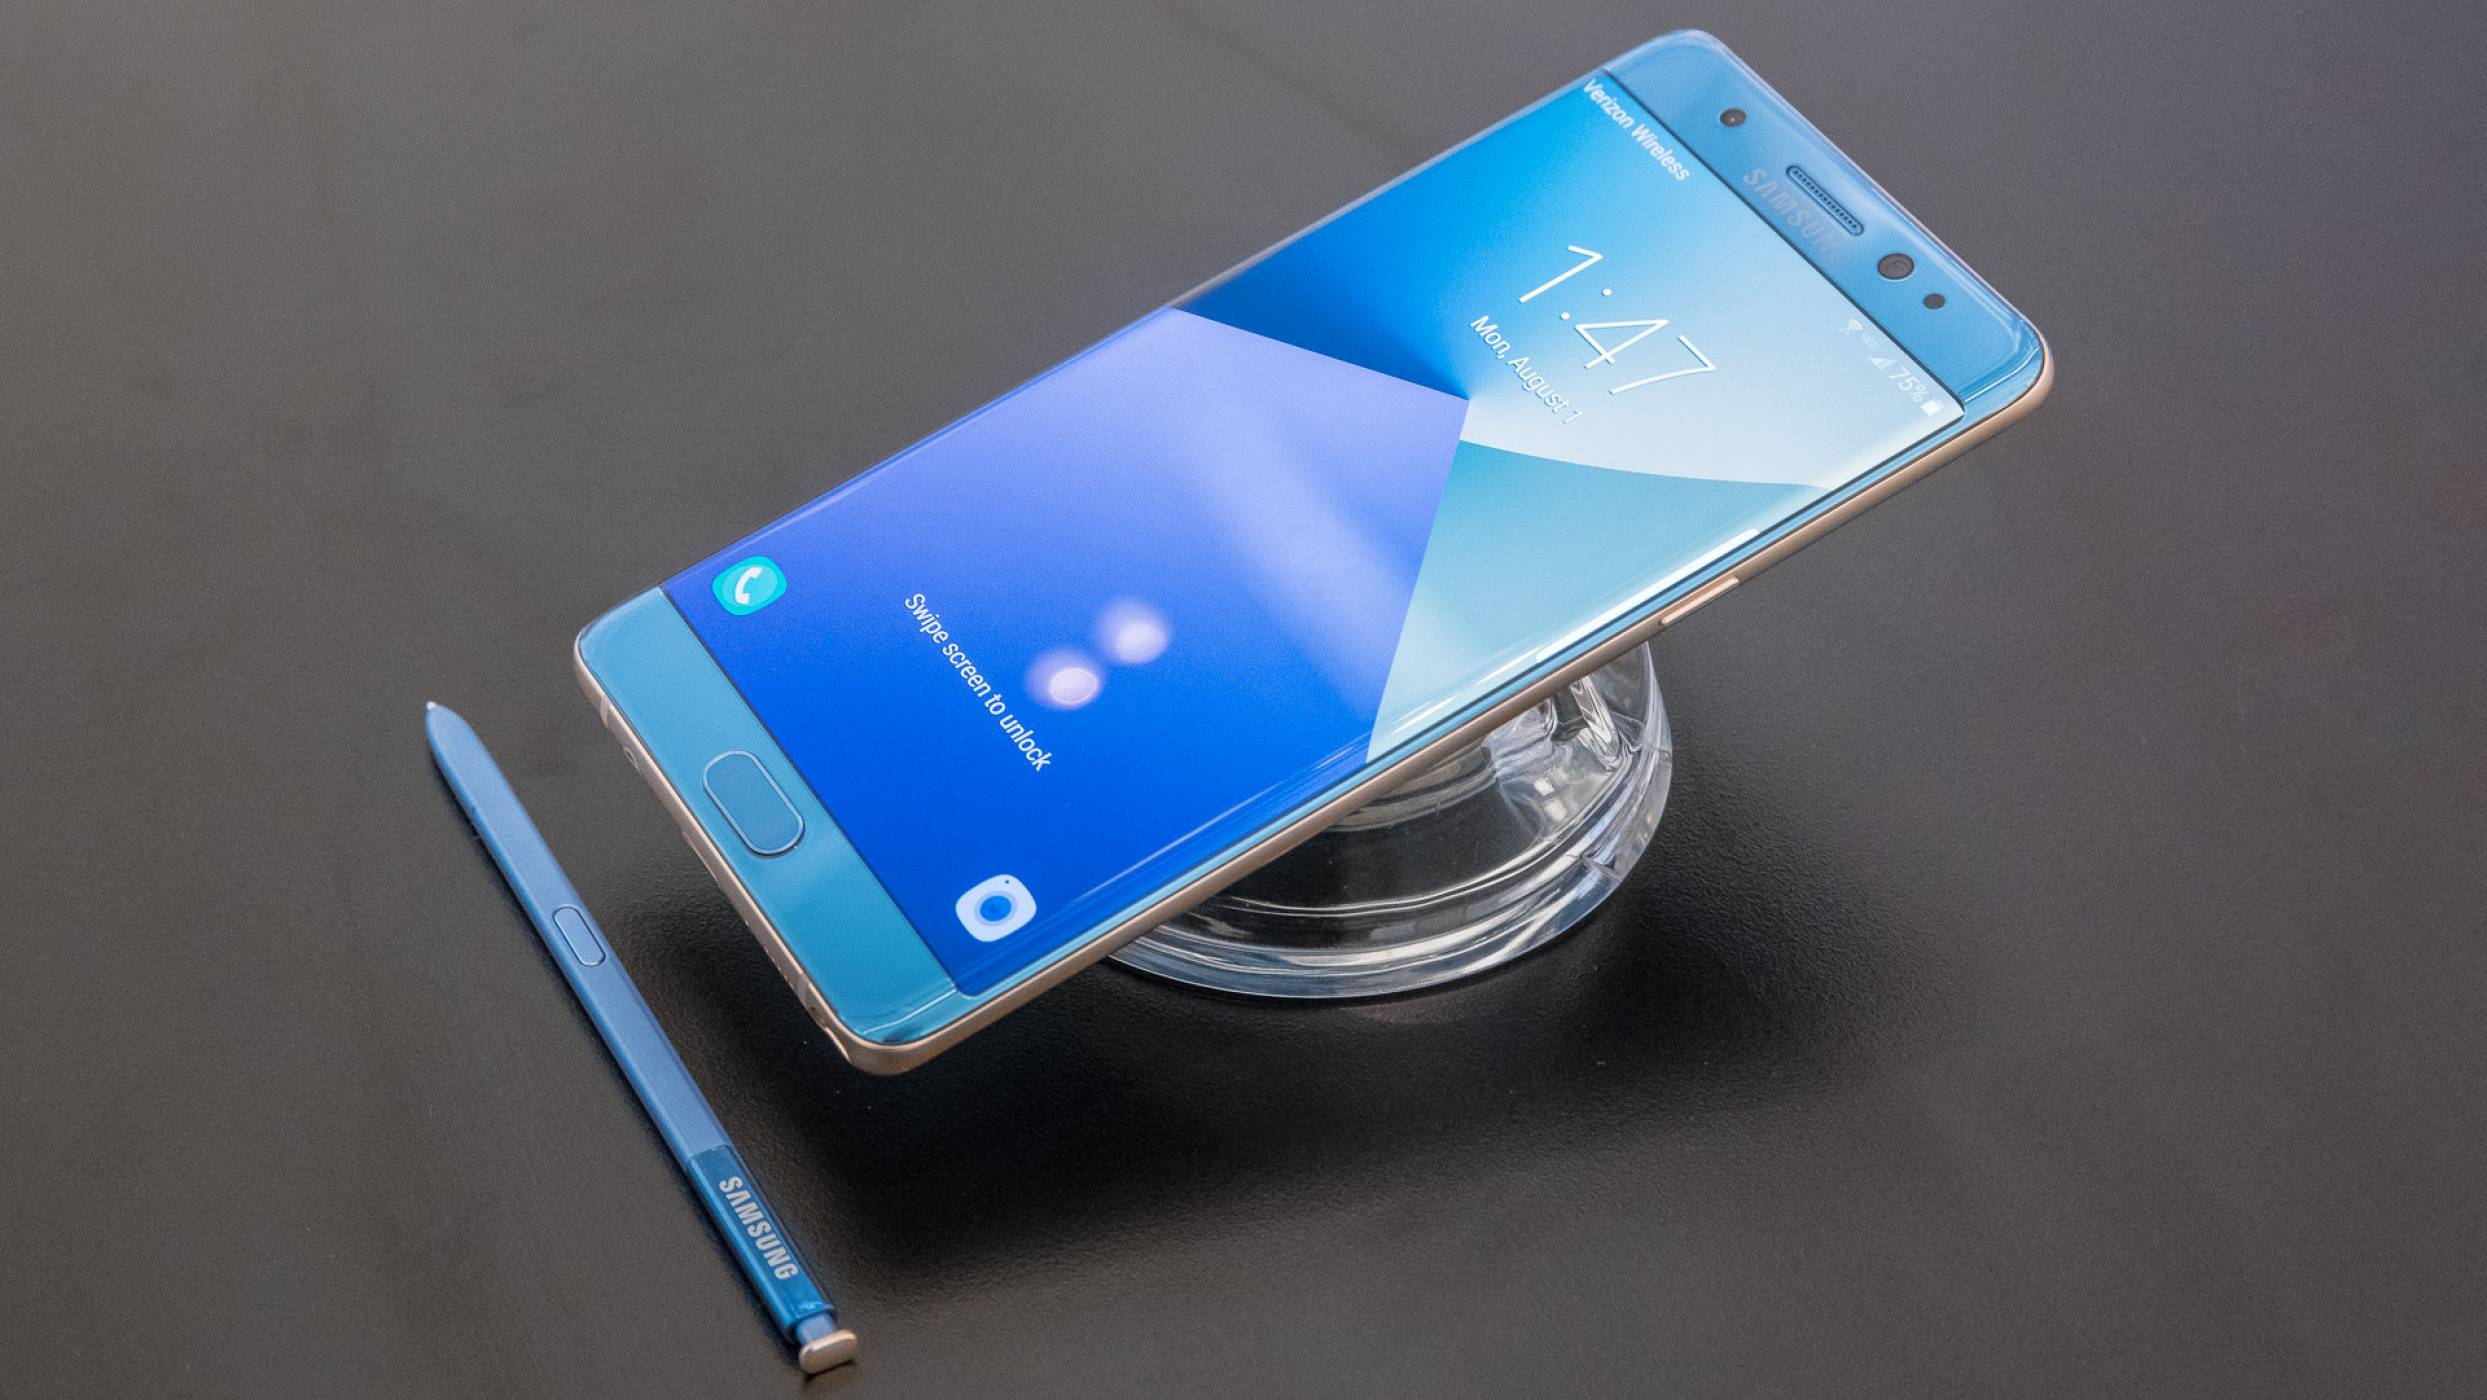 Samsung Galaxy Note 8 ще има 6.3-инчов екран, microSD слот и 64 GB вградена памет